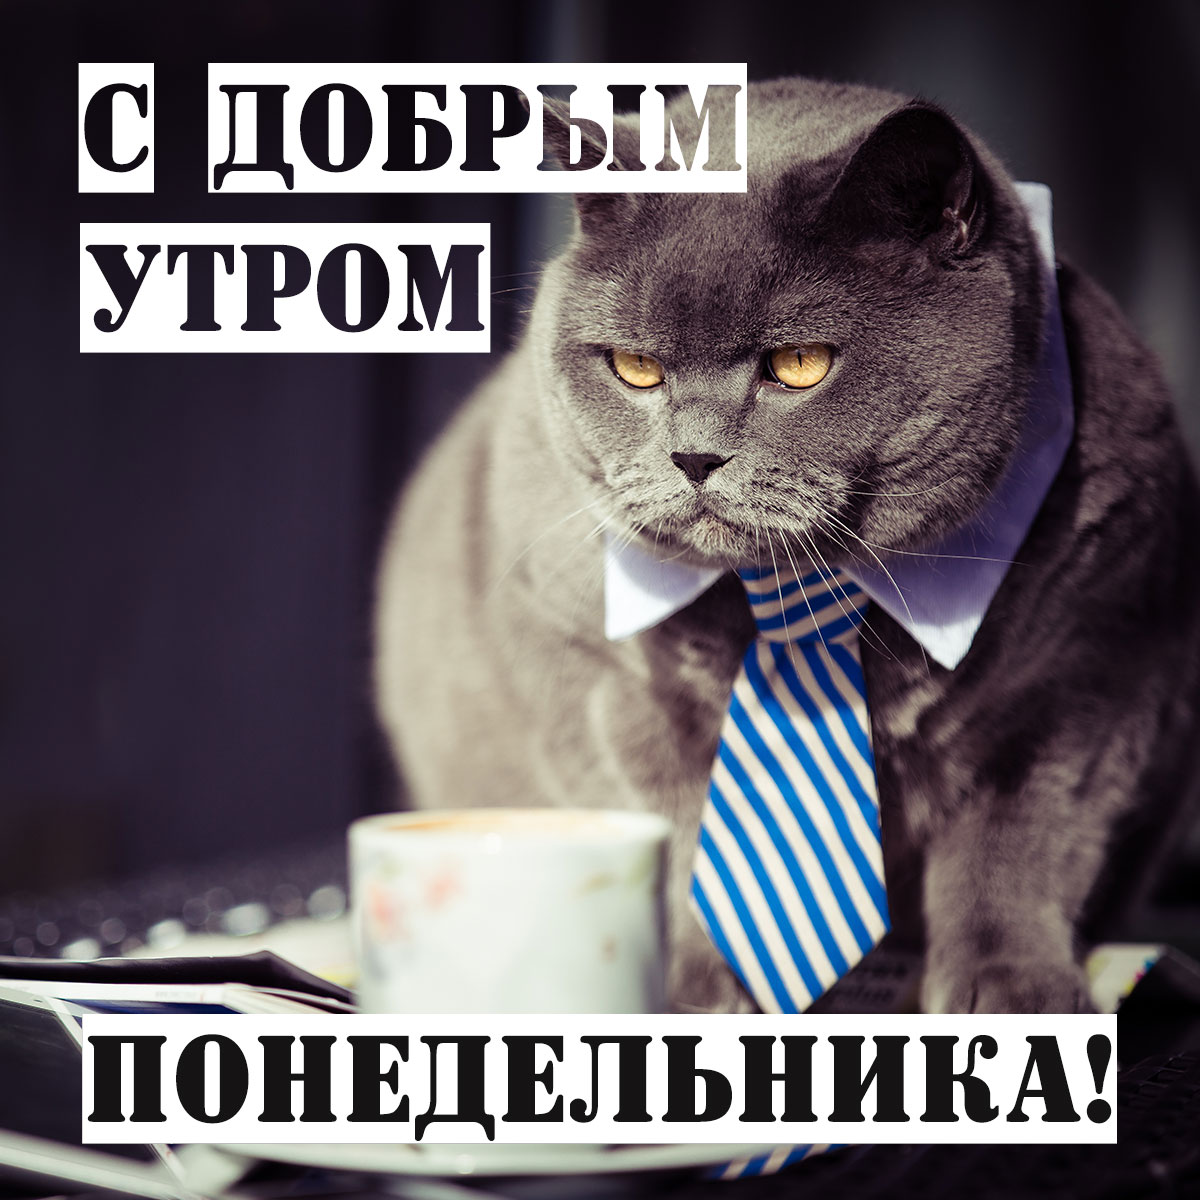 Открытка с добрым утром понедельника - серый кот в мужском галстуке возле кружки чая.